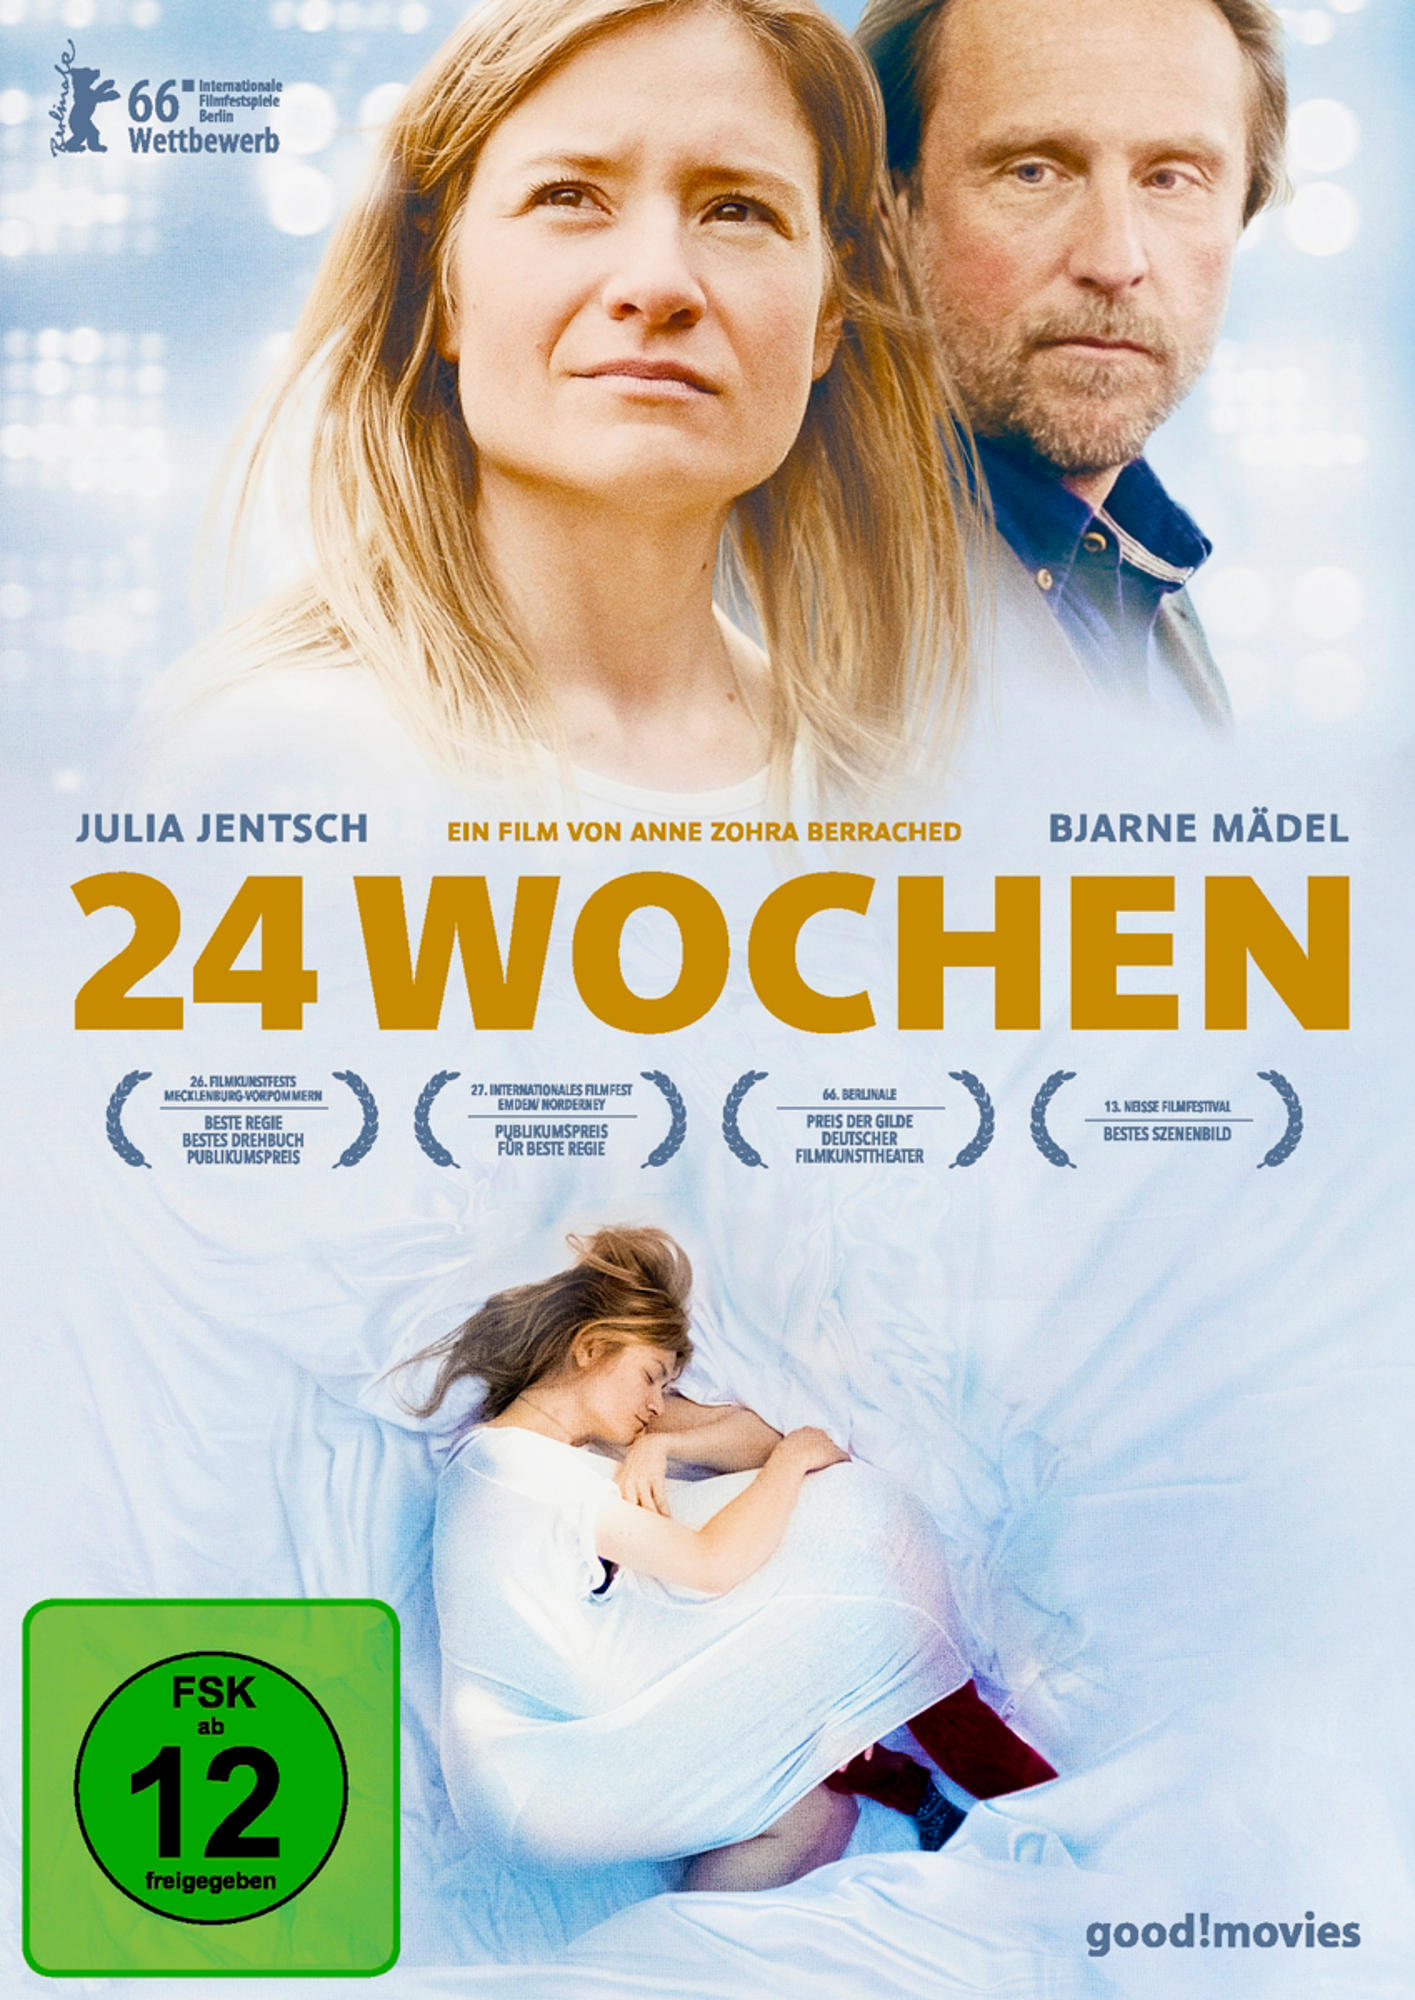 DVD Wochen 24